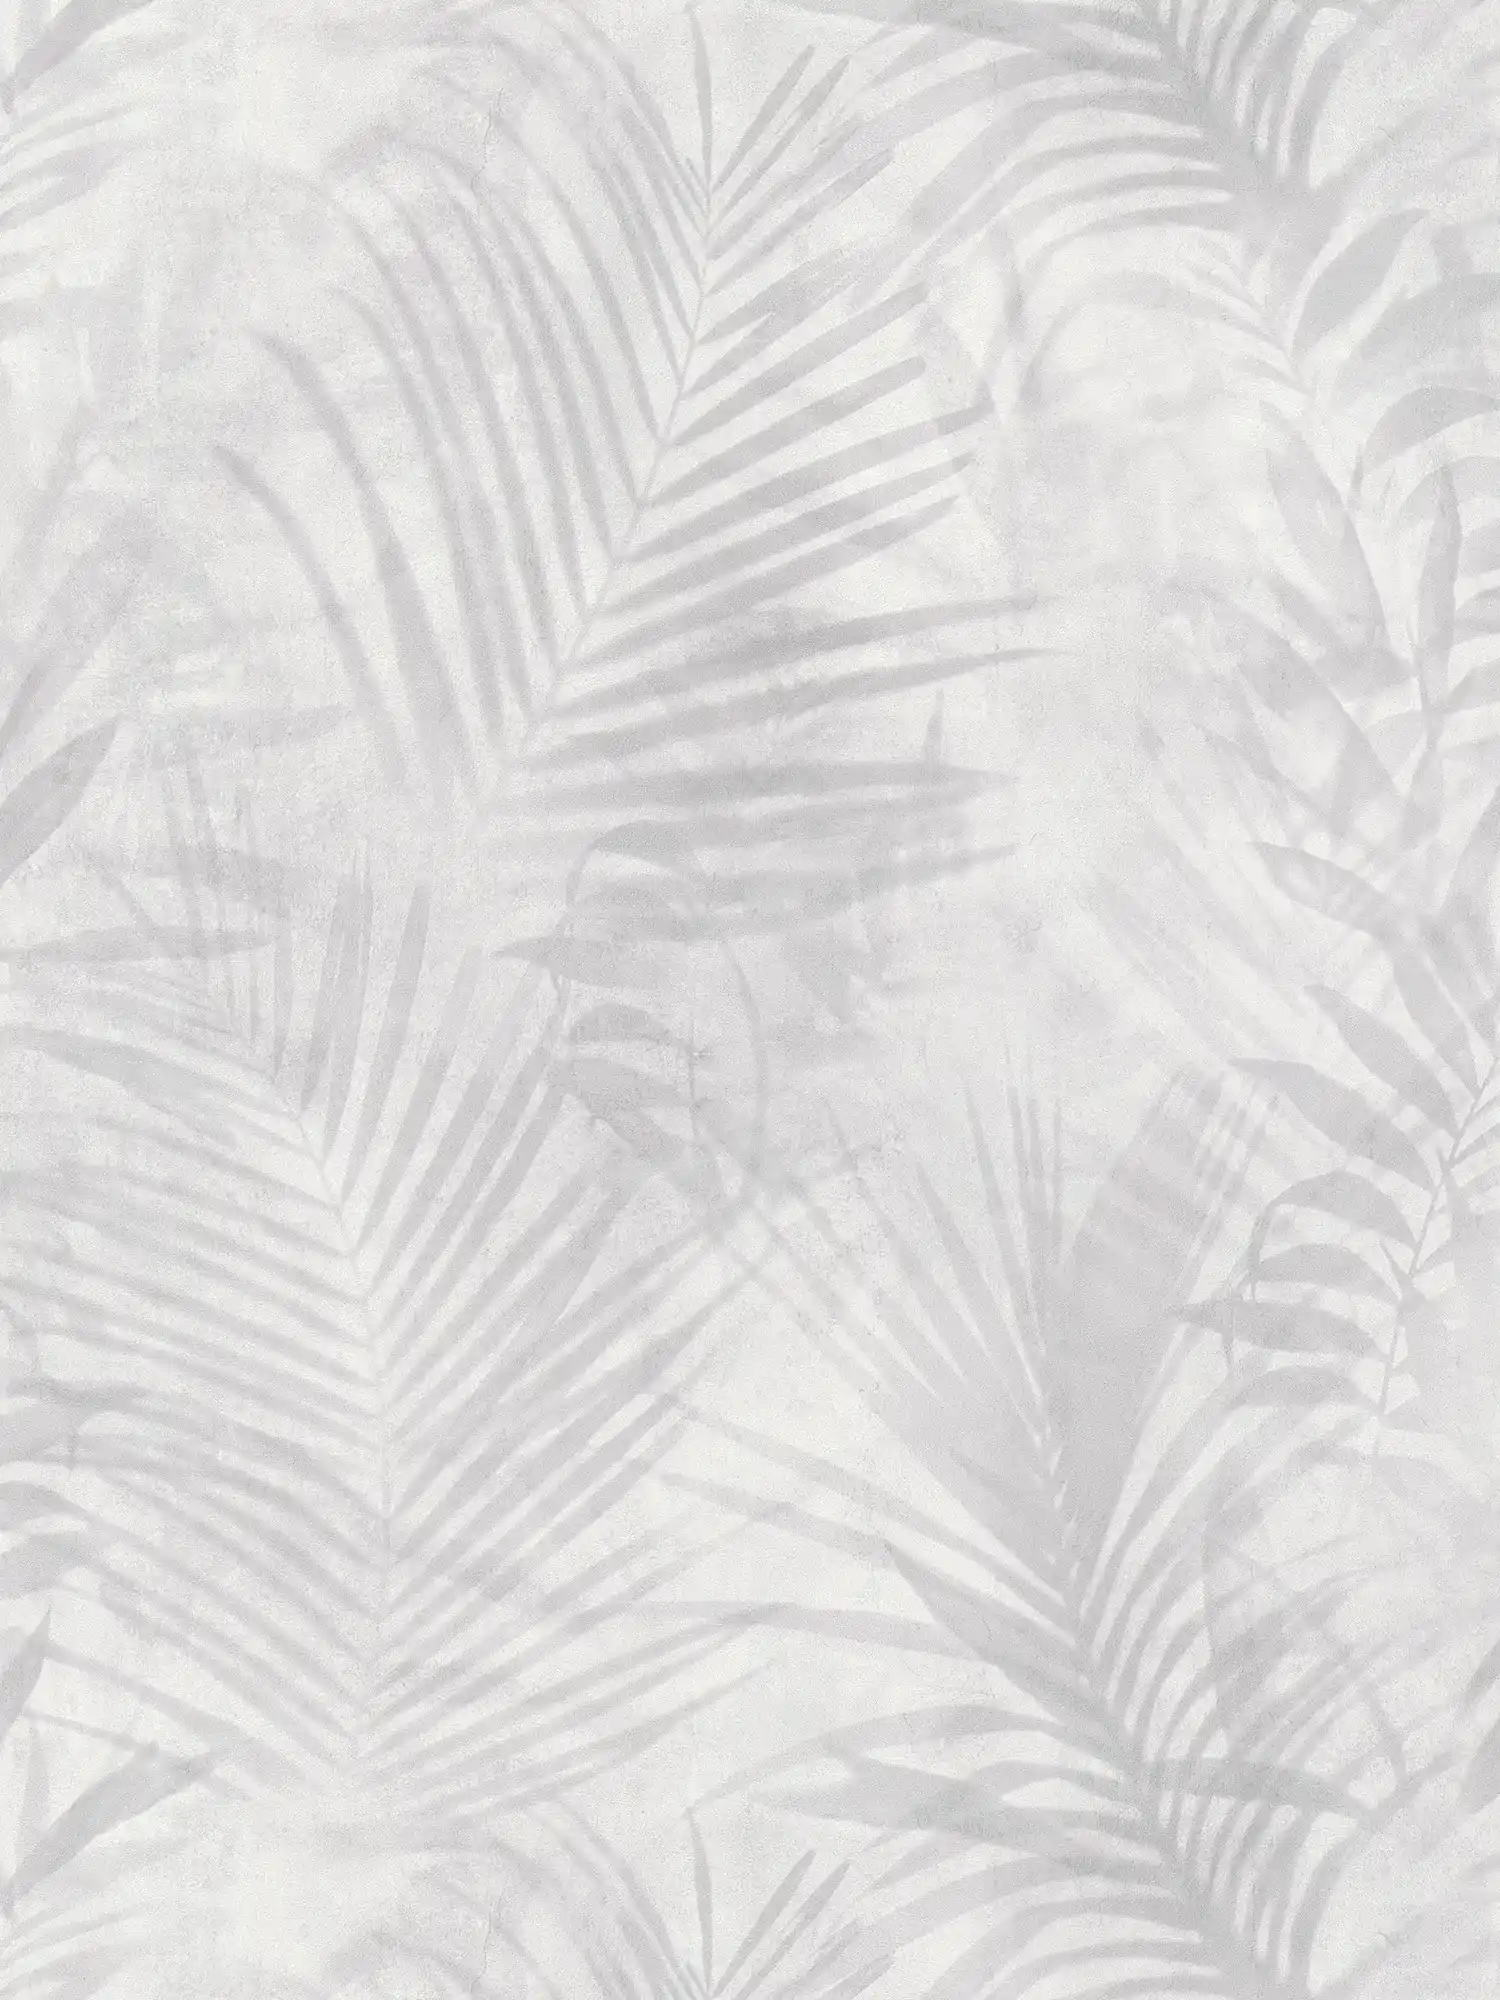 behang palmboom patroon in linnen look - grijs, wit, crème
